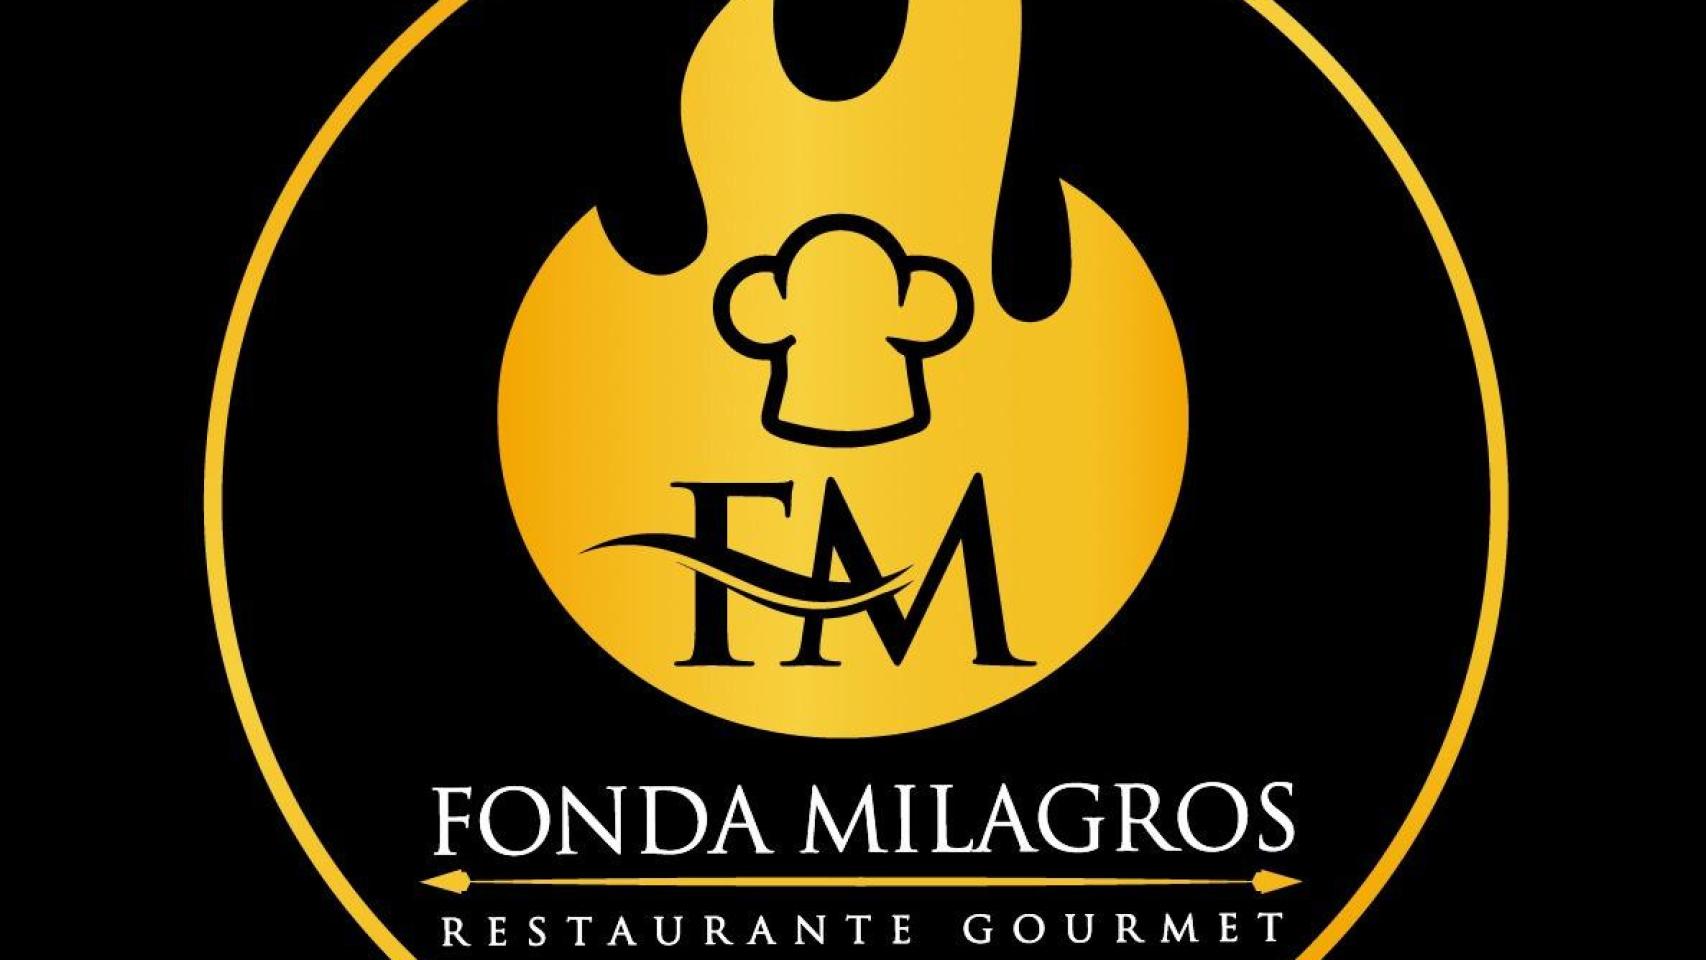 Publicidad del Restaurante Fonda Milagros de la familia Ramírez, propietaria de la discoteca calcinada en la zona de ocio de Atalayas.